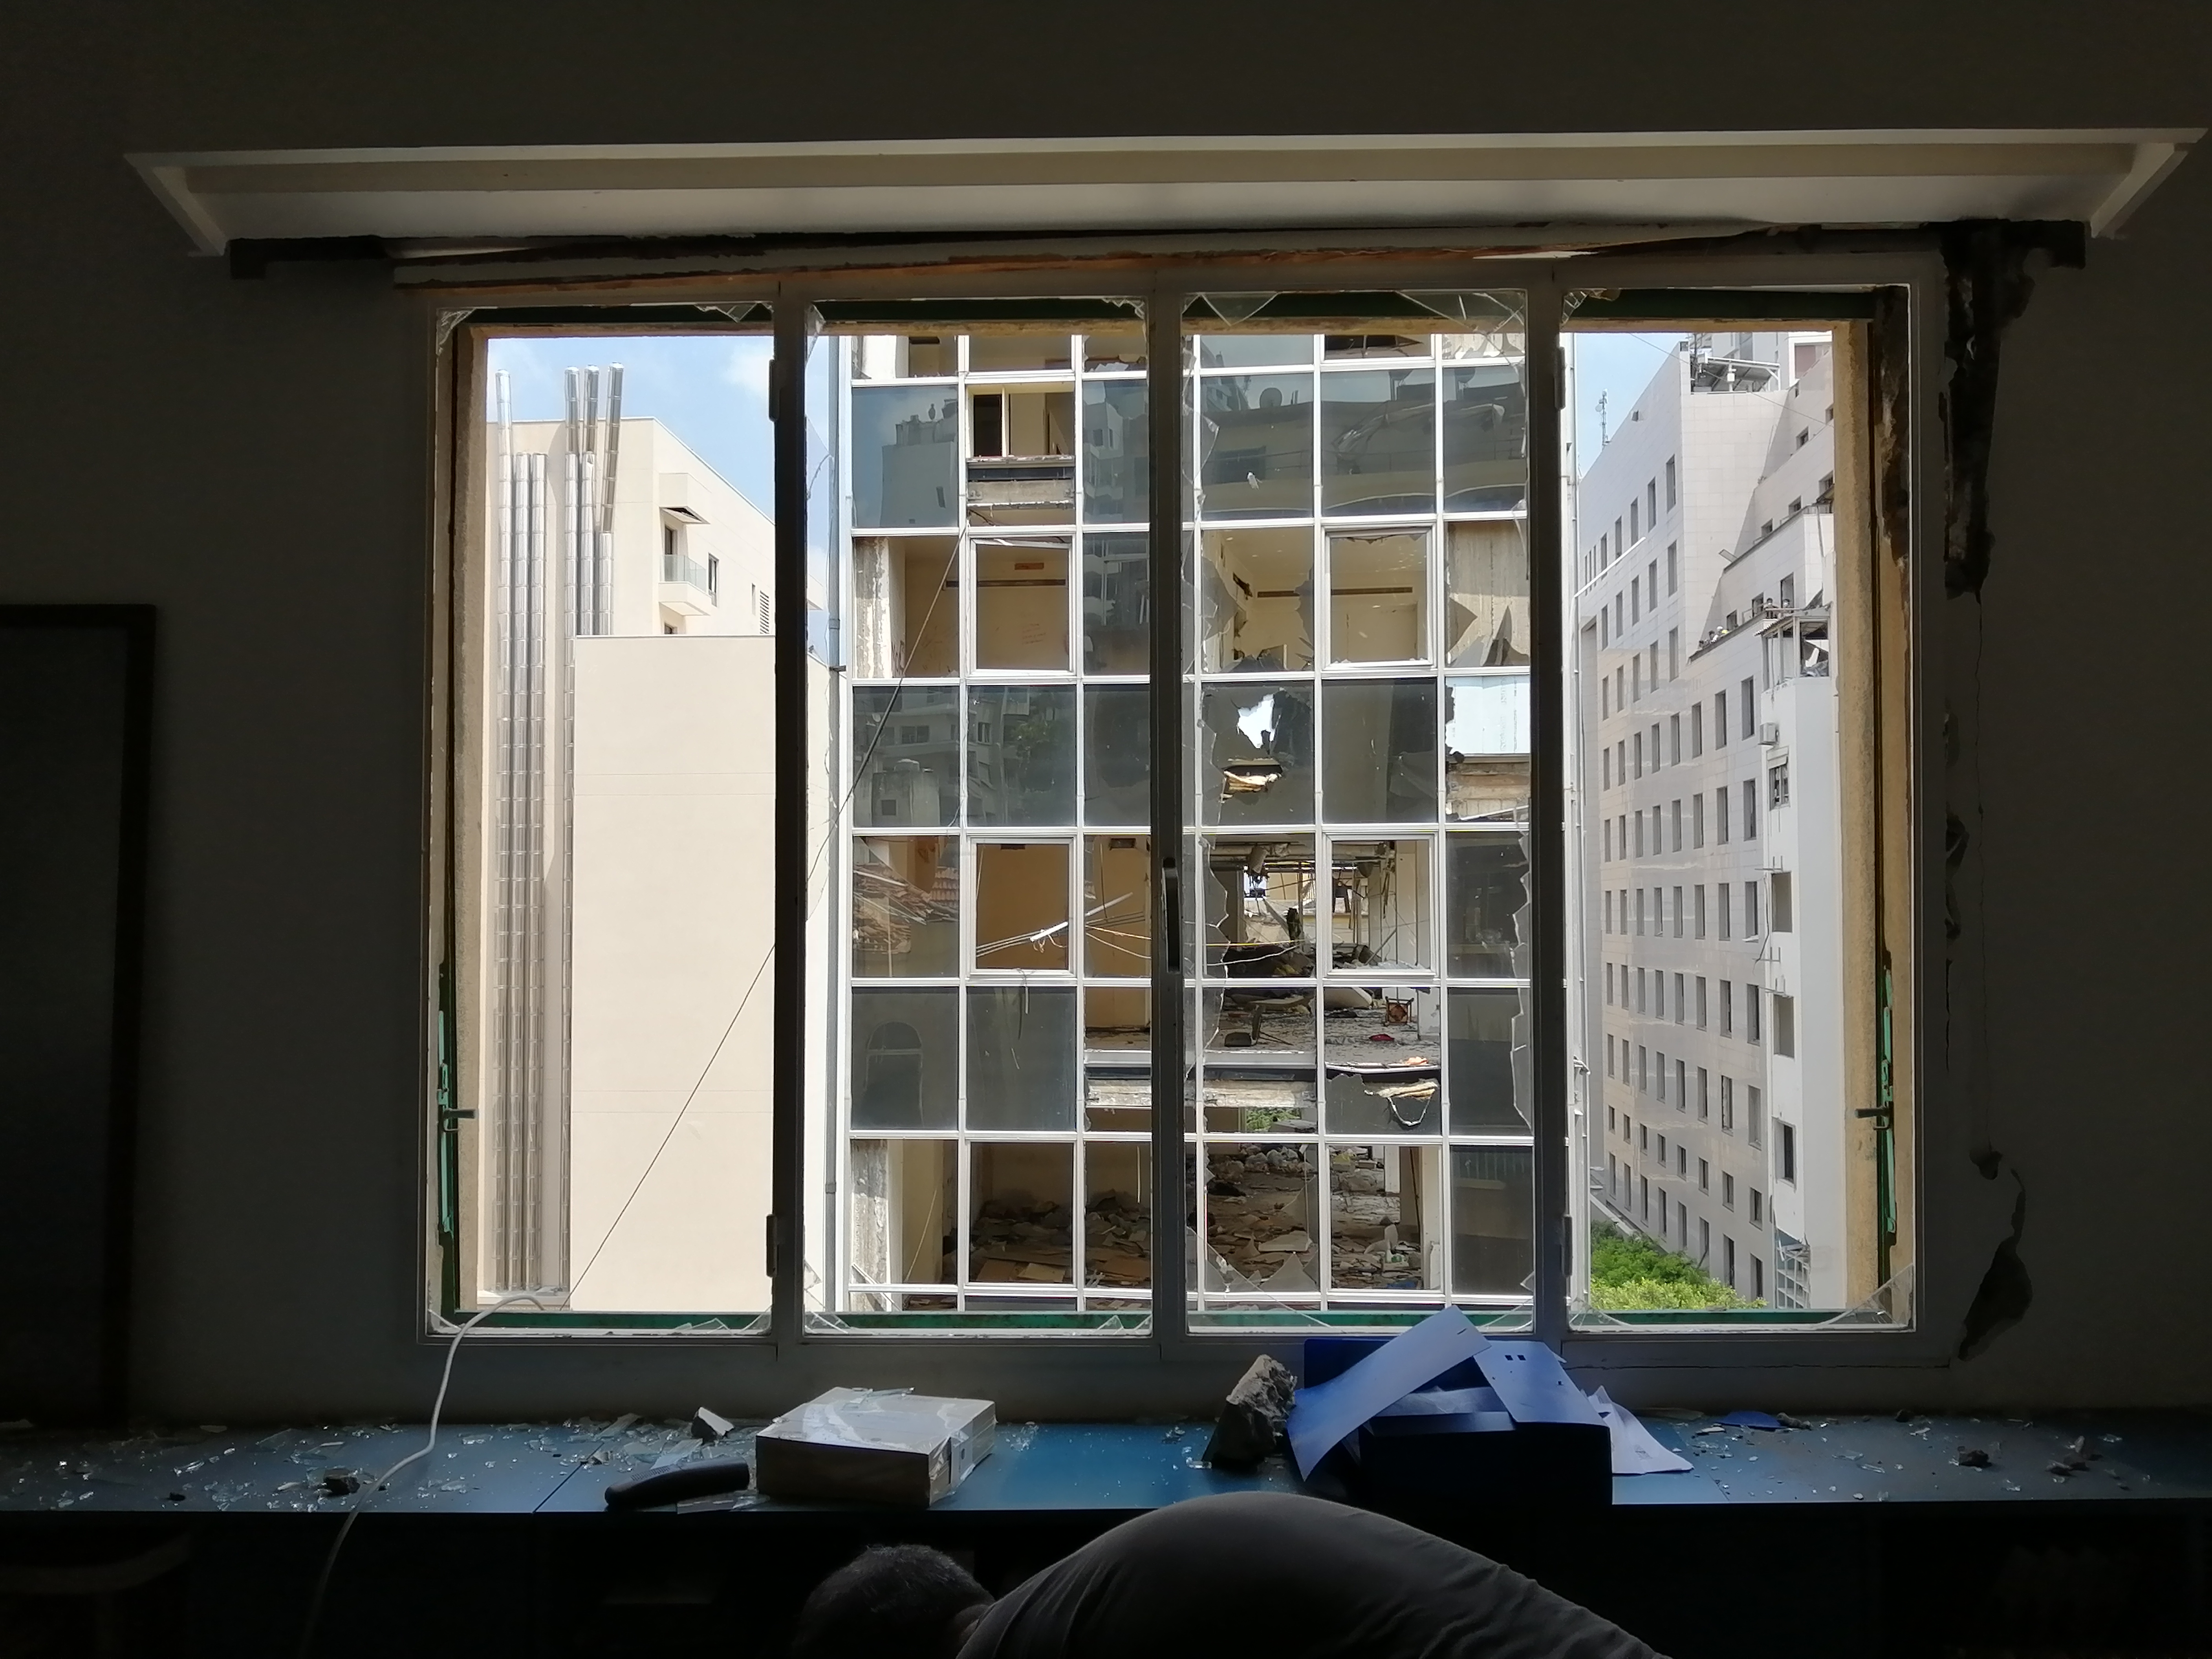 نافذة محطمة في مبنى المؤسسة العربية للصورة (المصدر)